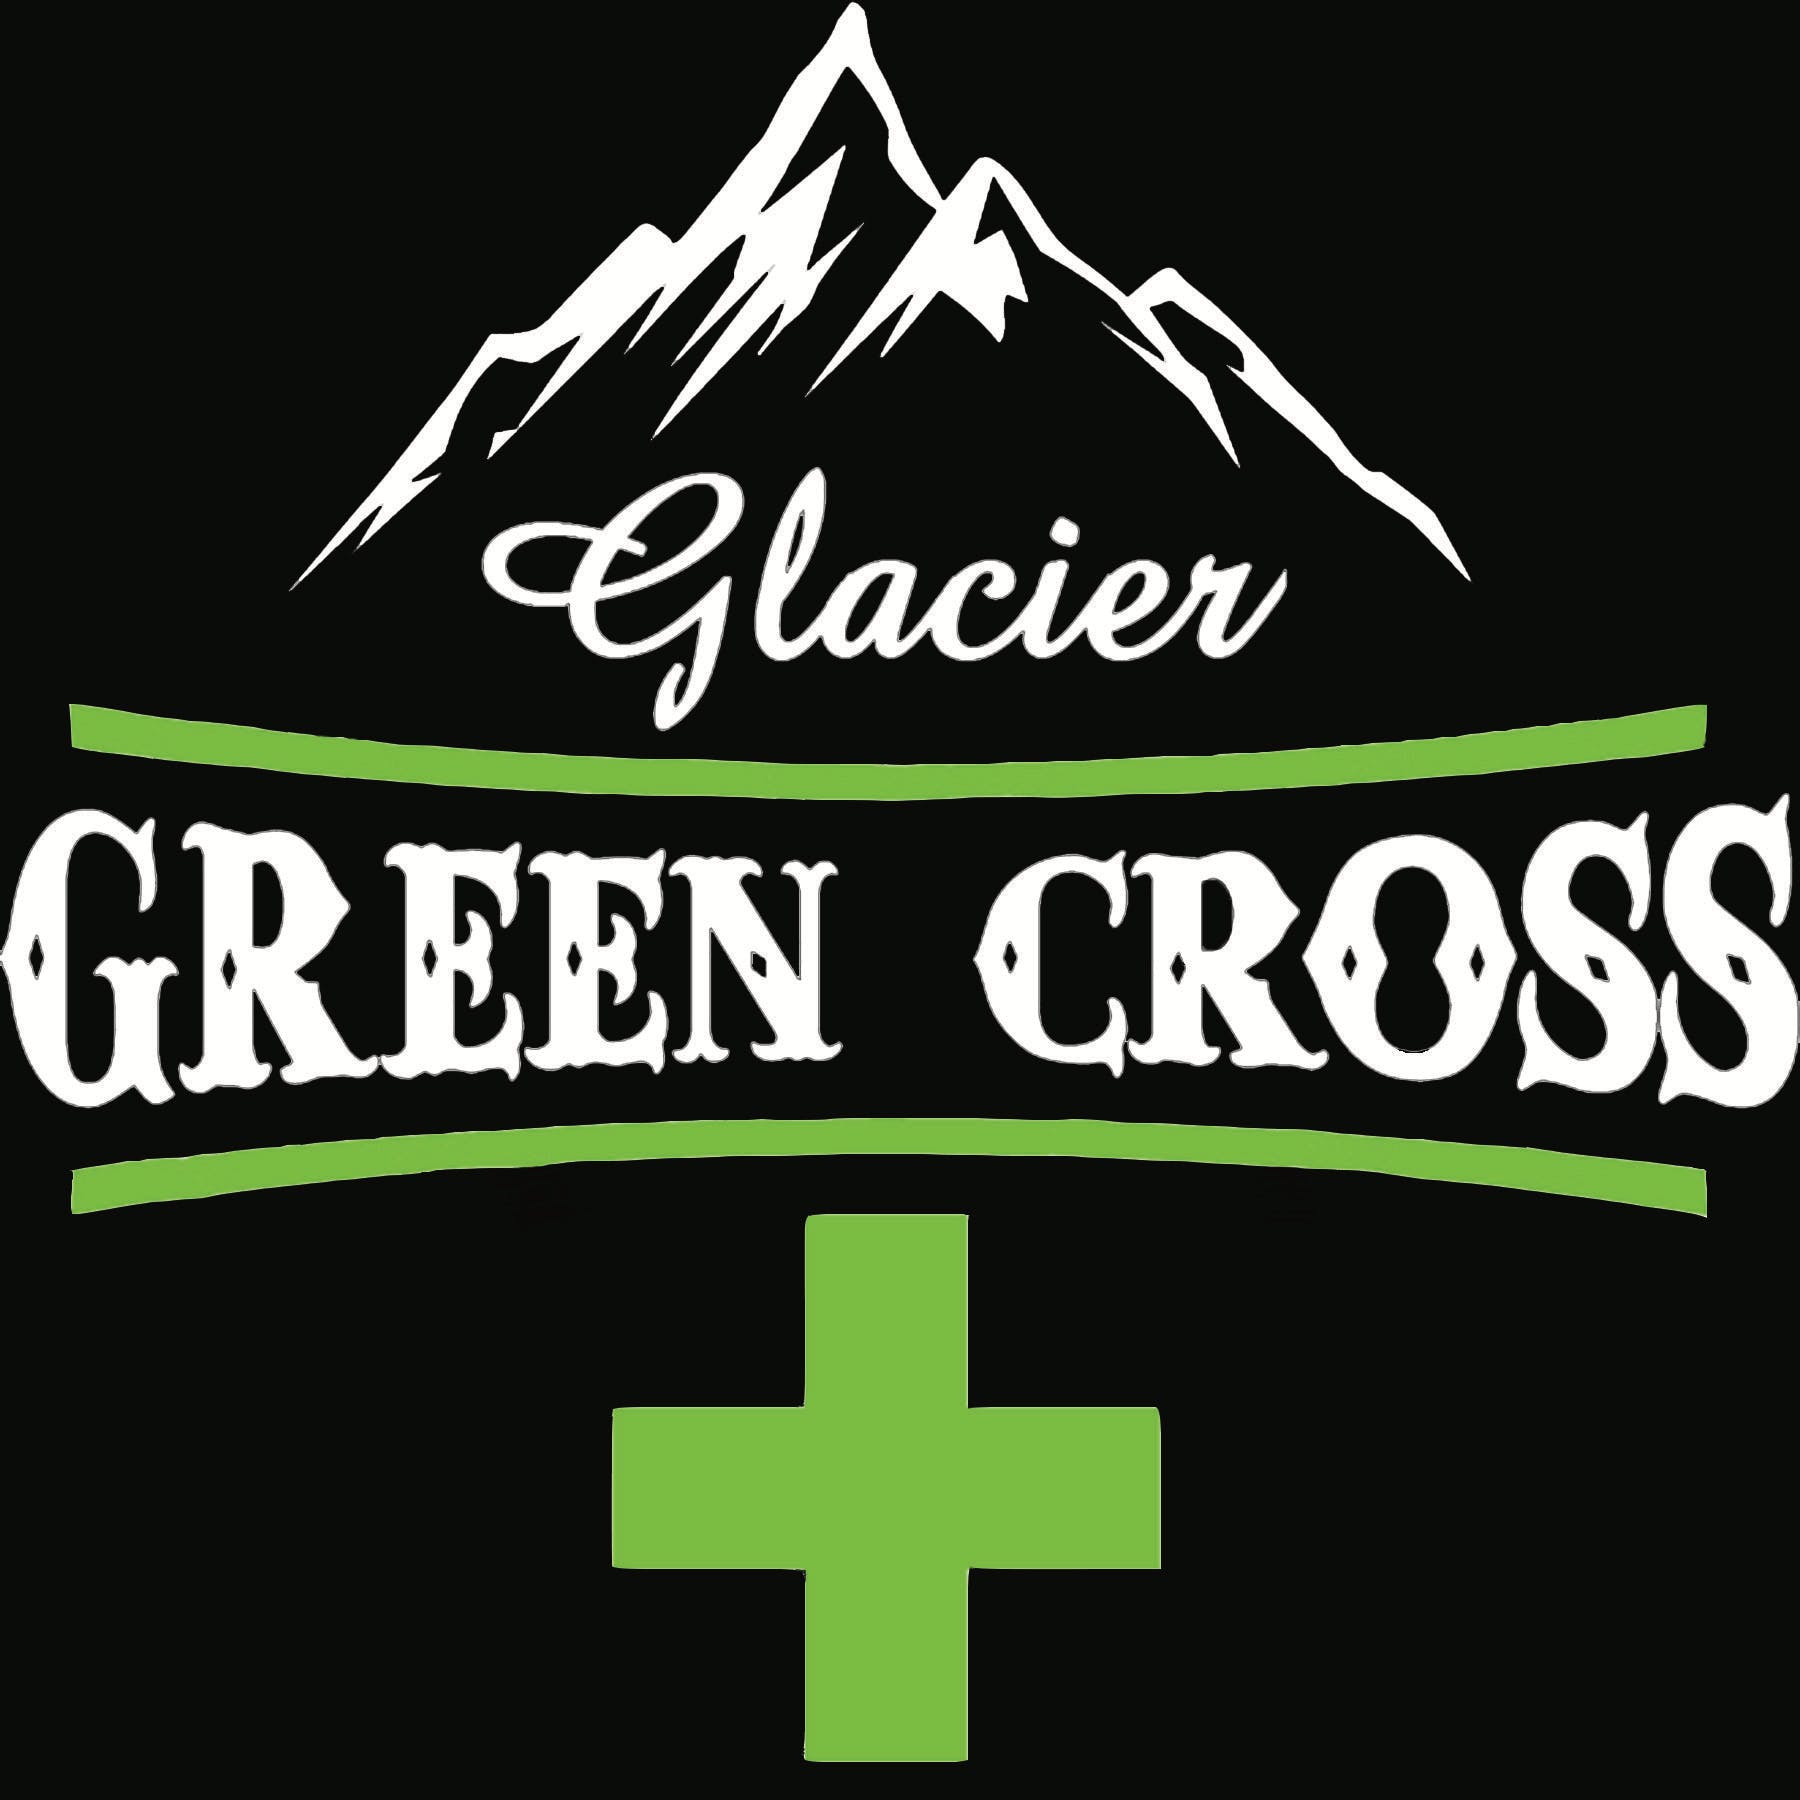 Glacier Green Cross - Medical Marijuana Doctors - Cannabizme.com